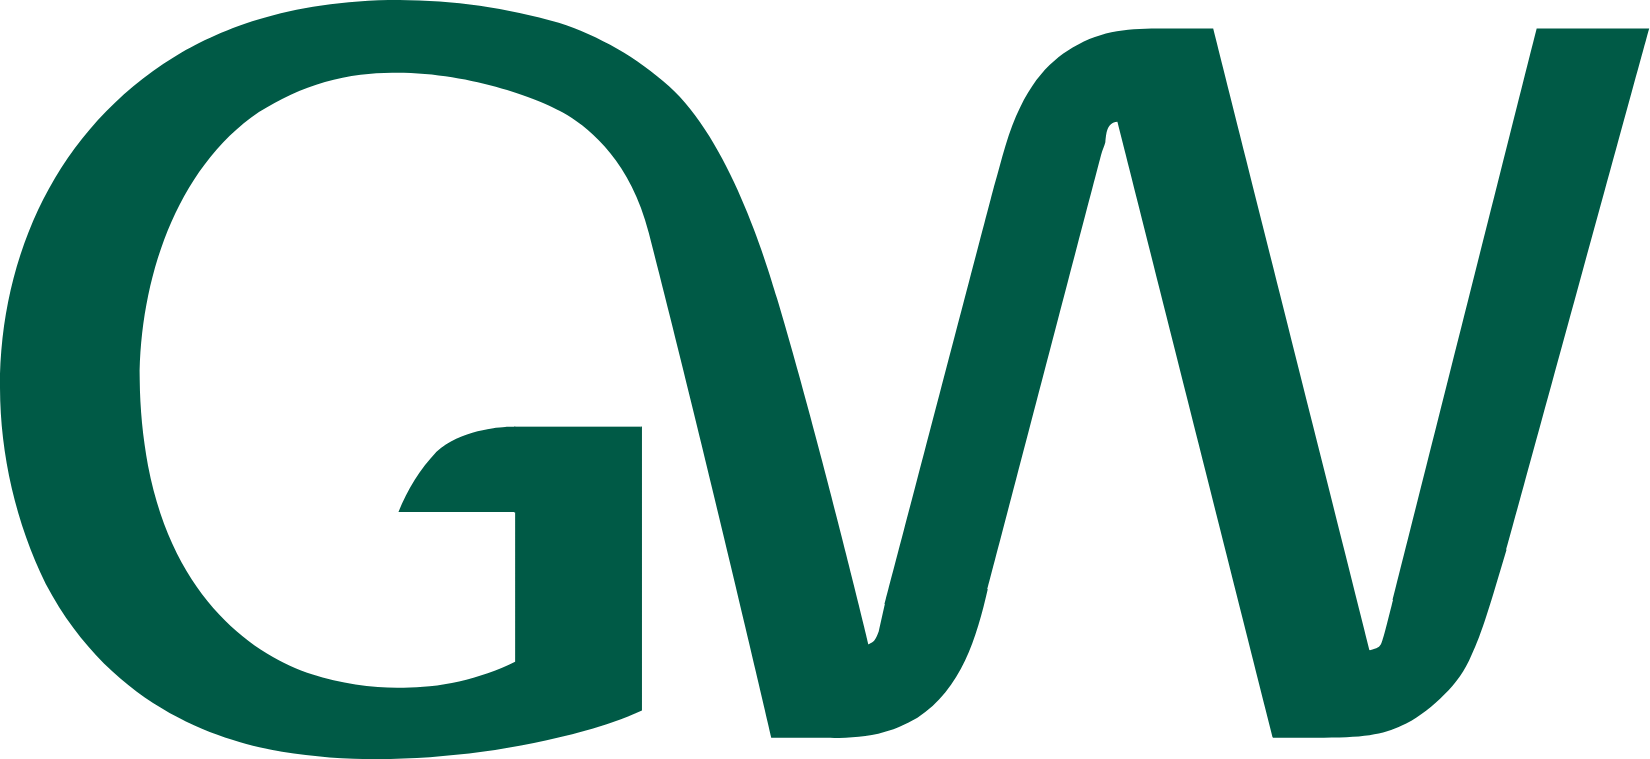 Gw Logo - Free Vectors & PSDs to Download